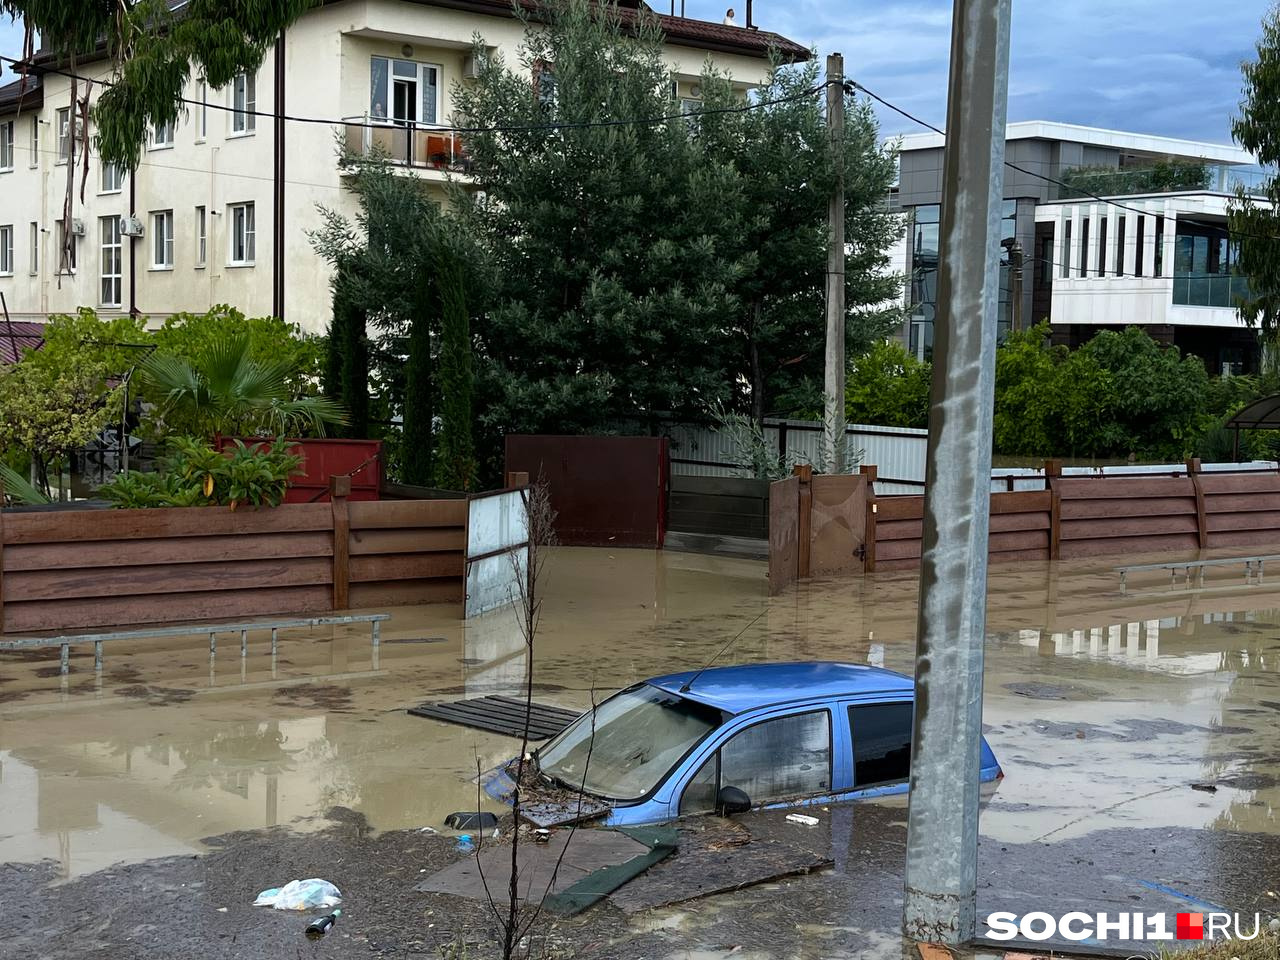 Сочи июля 2023. Ливни в Сочи 2023. Сочи потоп 2023. Сочи Адлер затопило 2023. Сочи наводнение 2023.